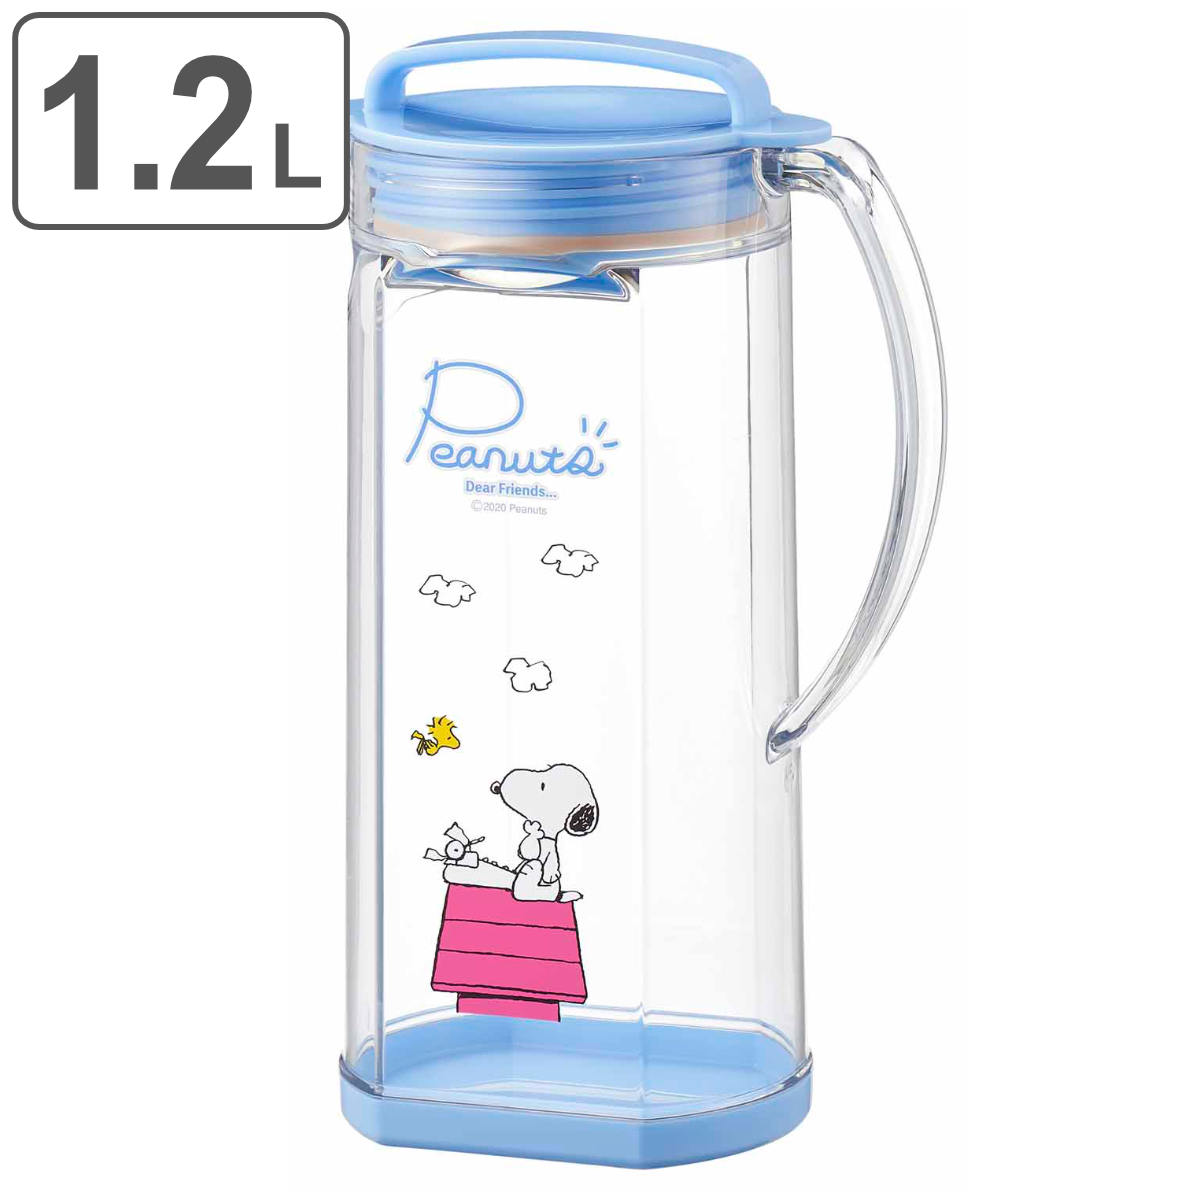 冷水筒 1.2L PEANUTS スヌーピー プラスチック 日本製 ピッチャー 麦茶ポット